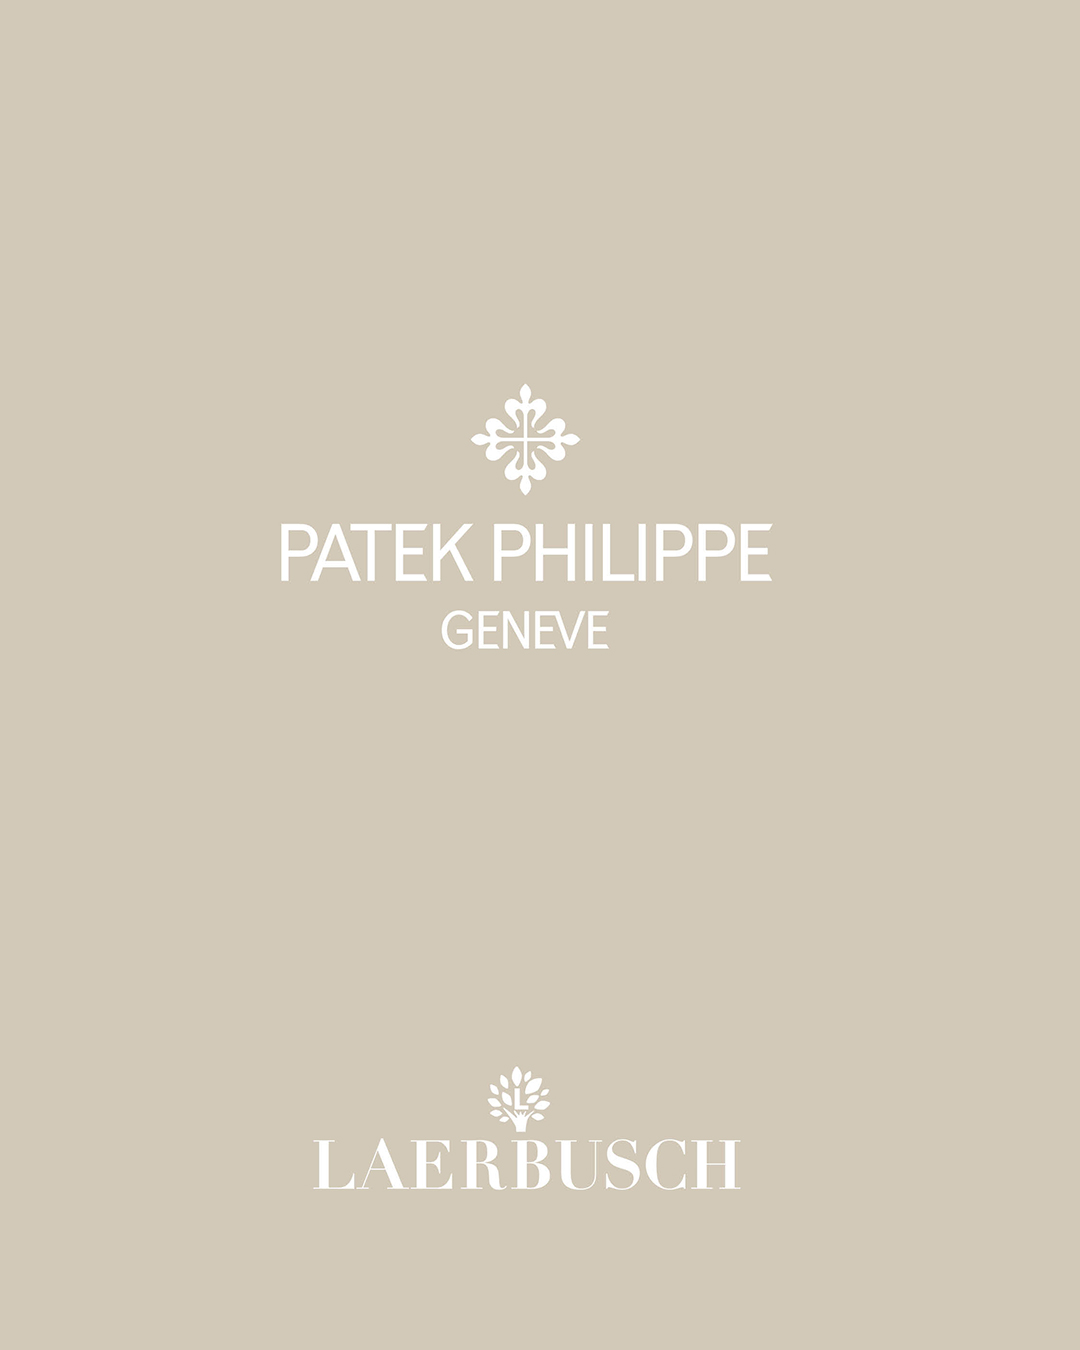 Patek Philippe bei Juwelier Laerbusch in Mülheim an der Ruhr